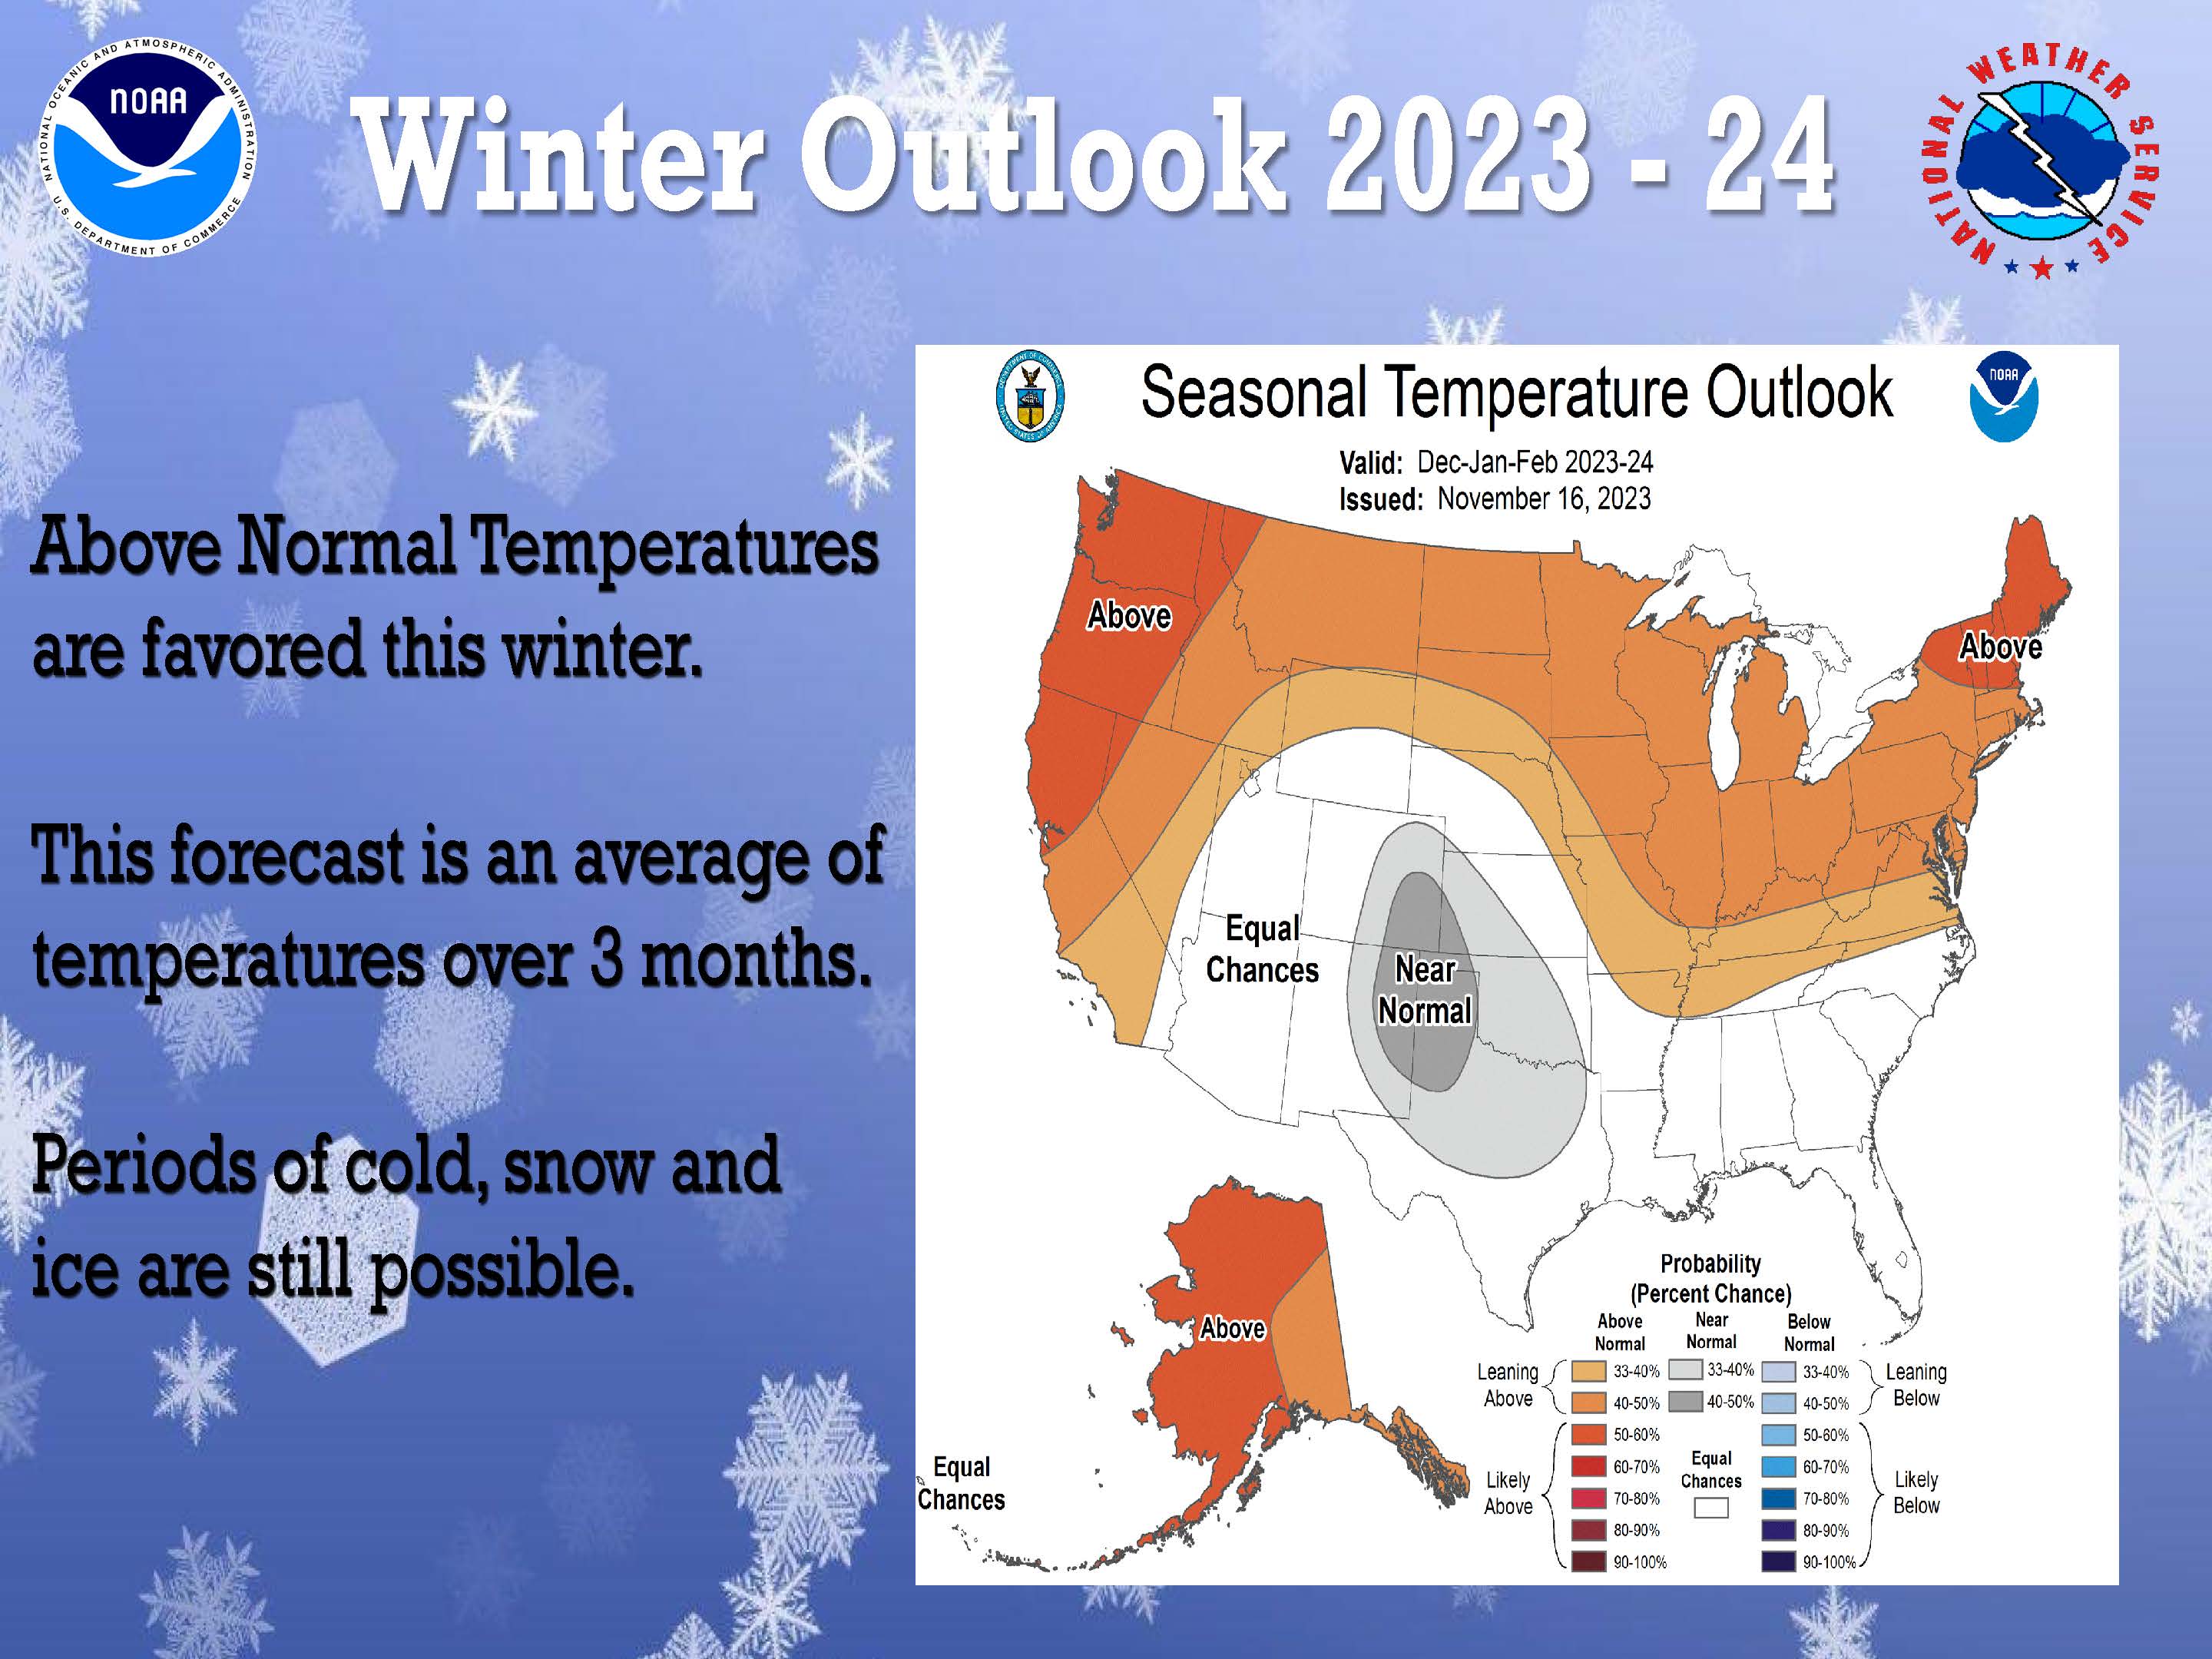 Tri-State Winter Weather Preparedness Week